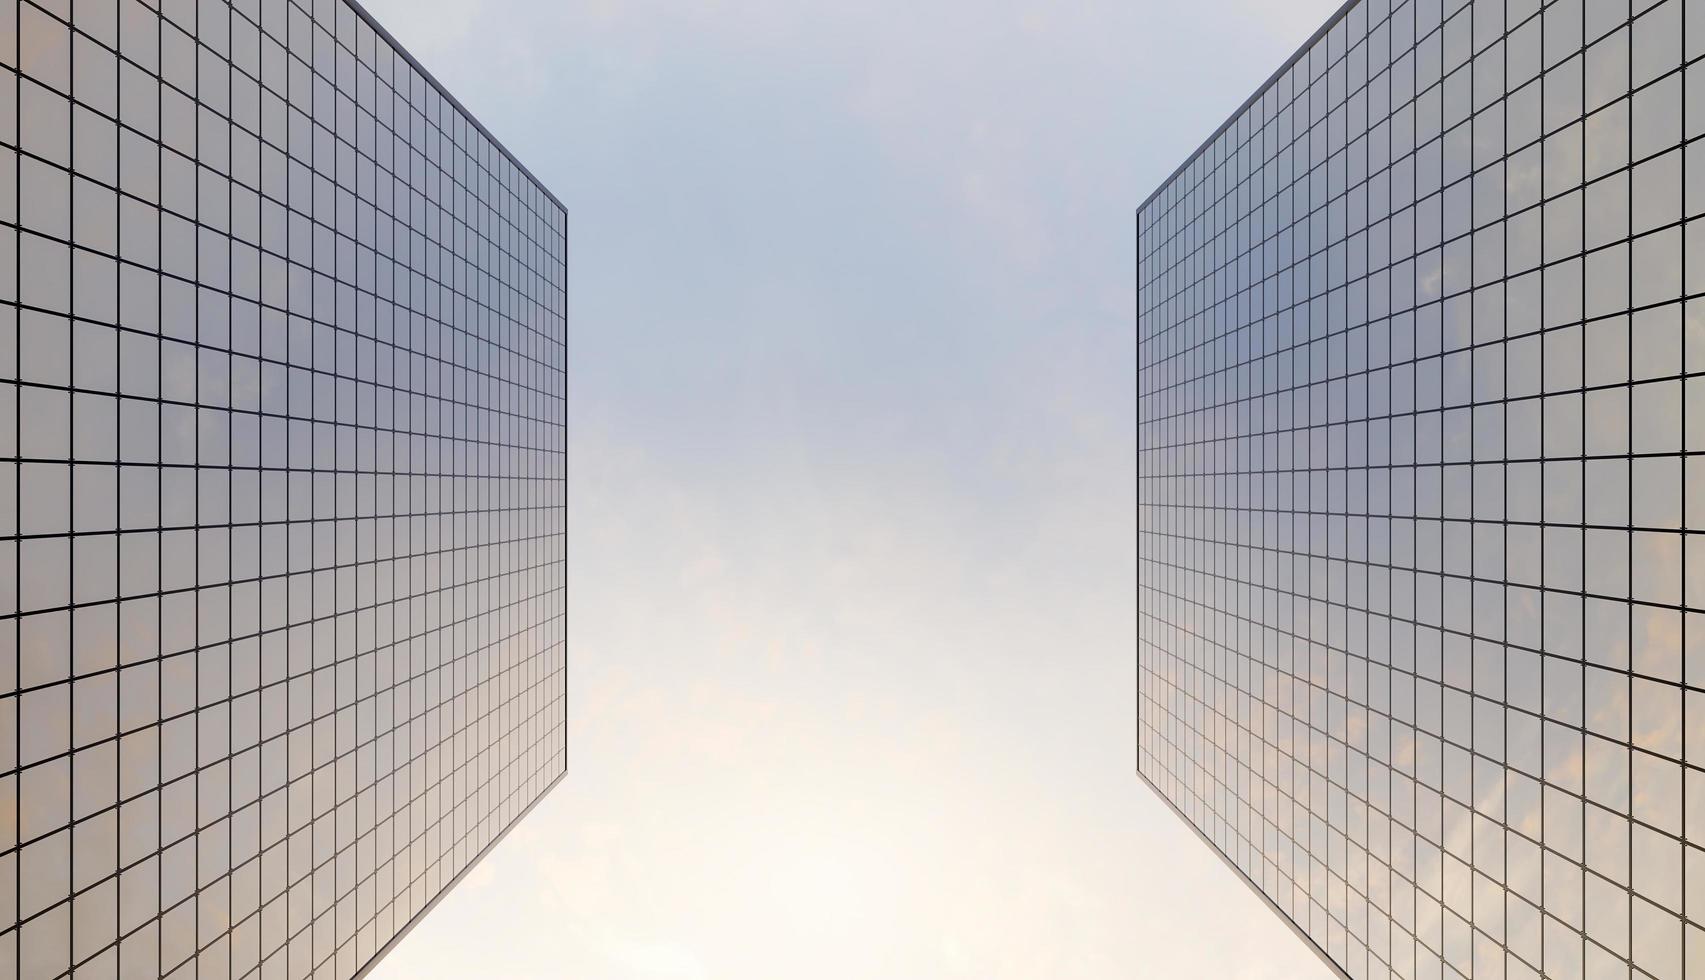 grattacielo di vetro visto dal basso con un cielo leggermente nuvoloso e colorato, rendering 3d foto